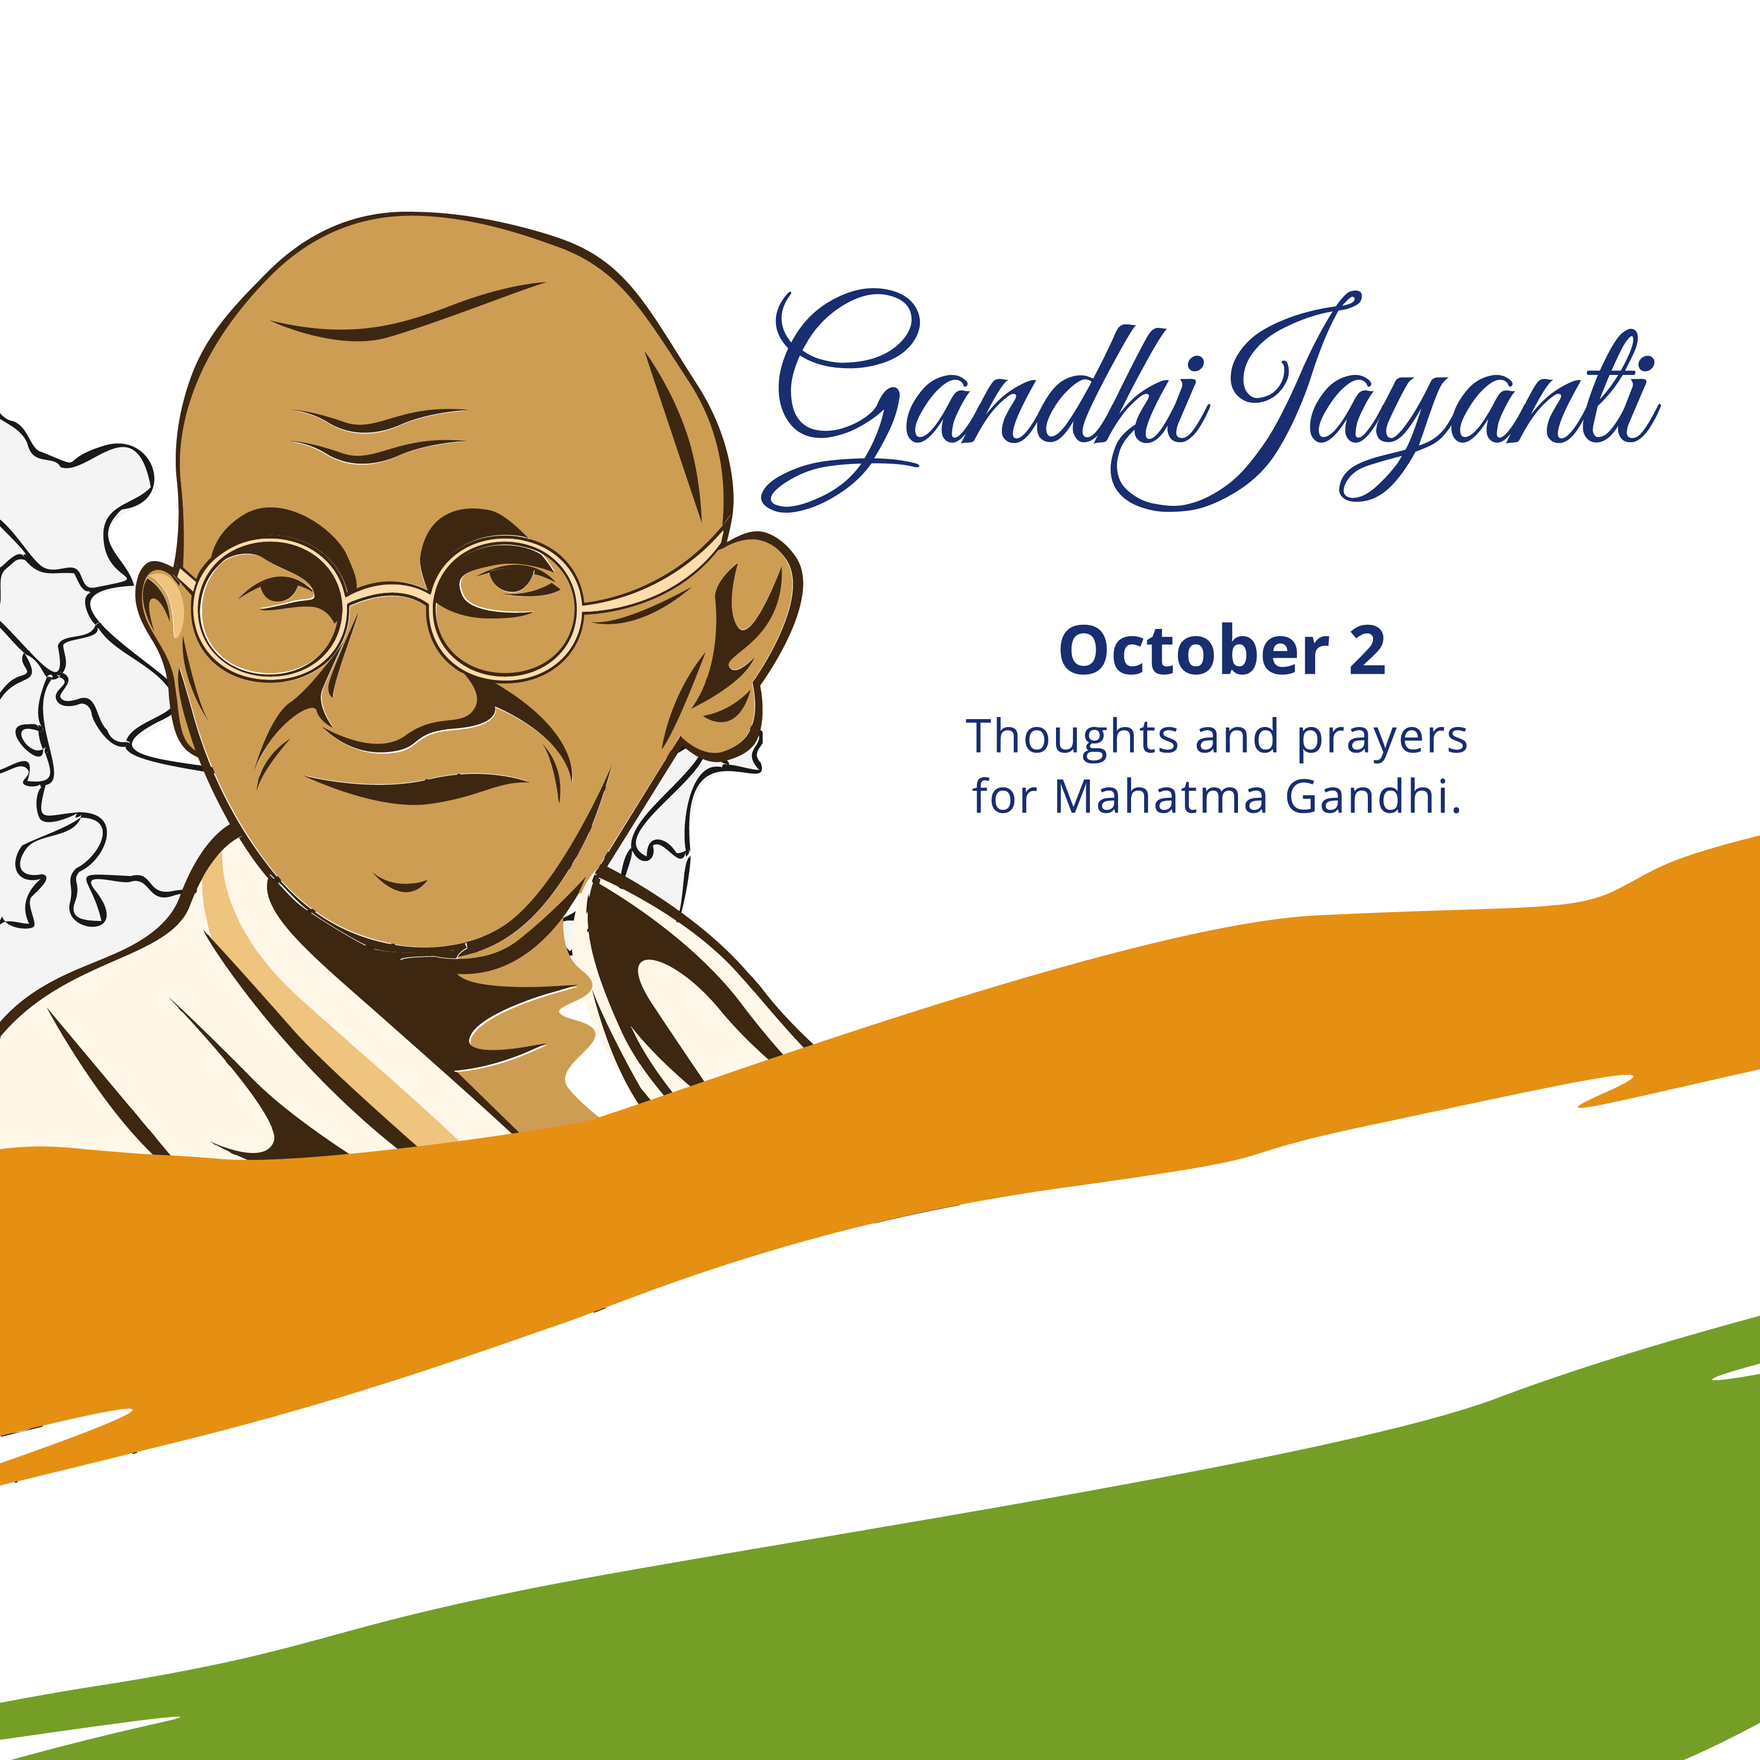 Gandhi Jayanti Templates - Images, Background, Free, Download 